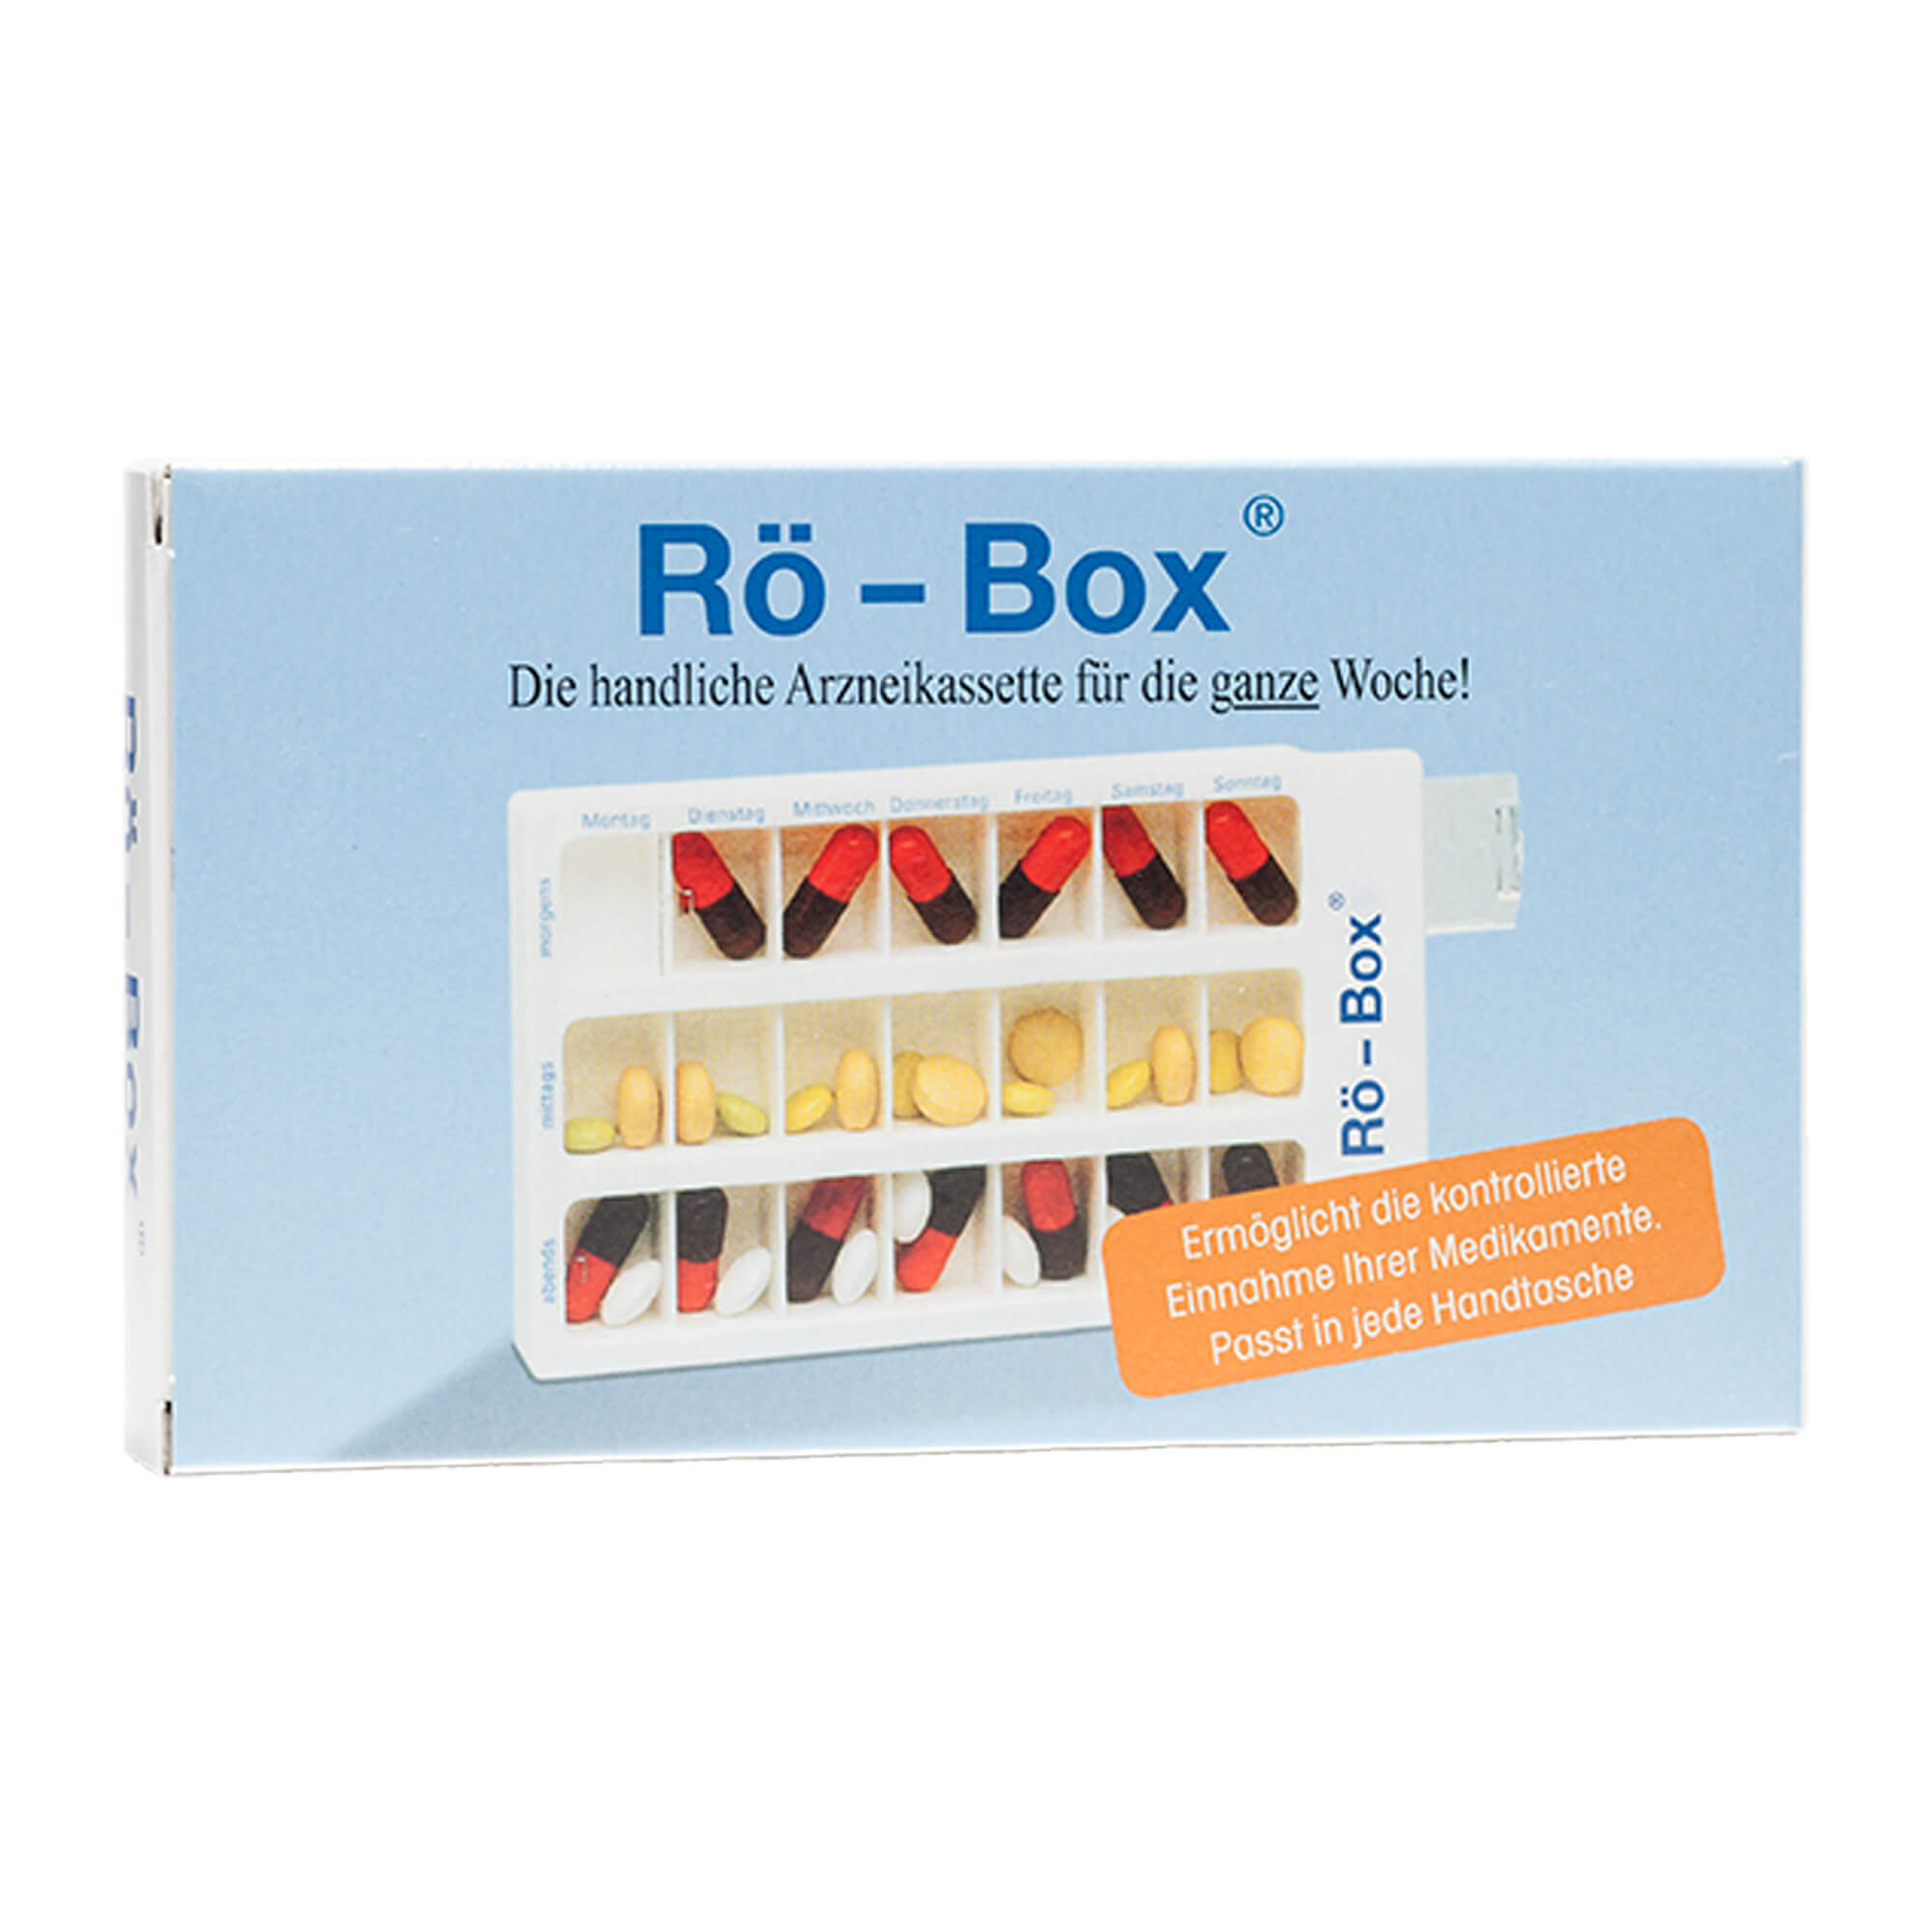 Tablettenbox für eine sichere und kontrollierte Medikamenten-Einnahme.